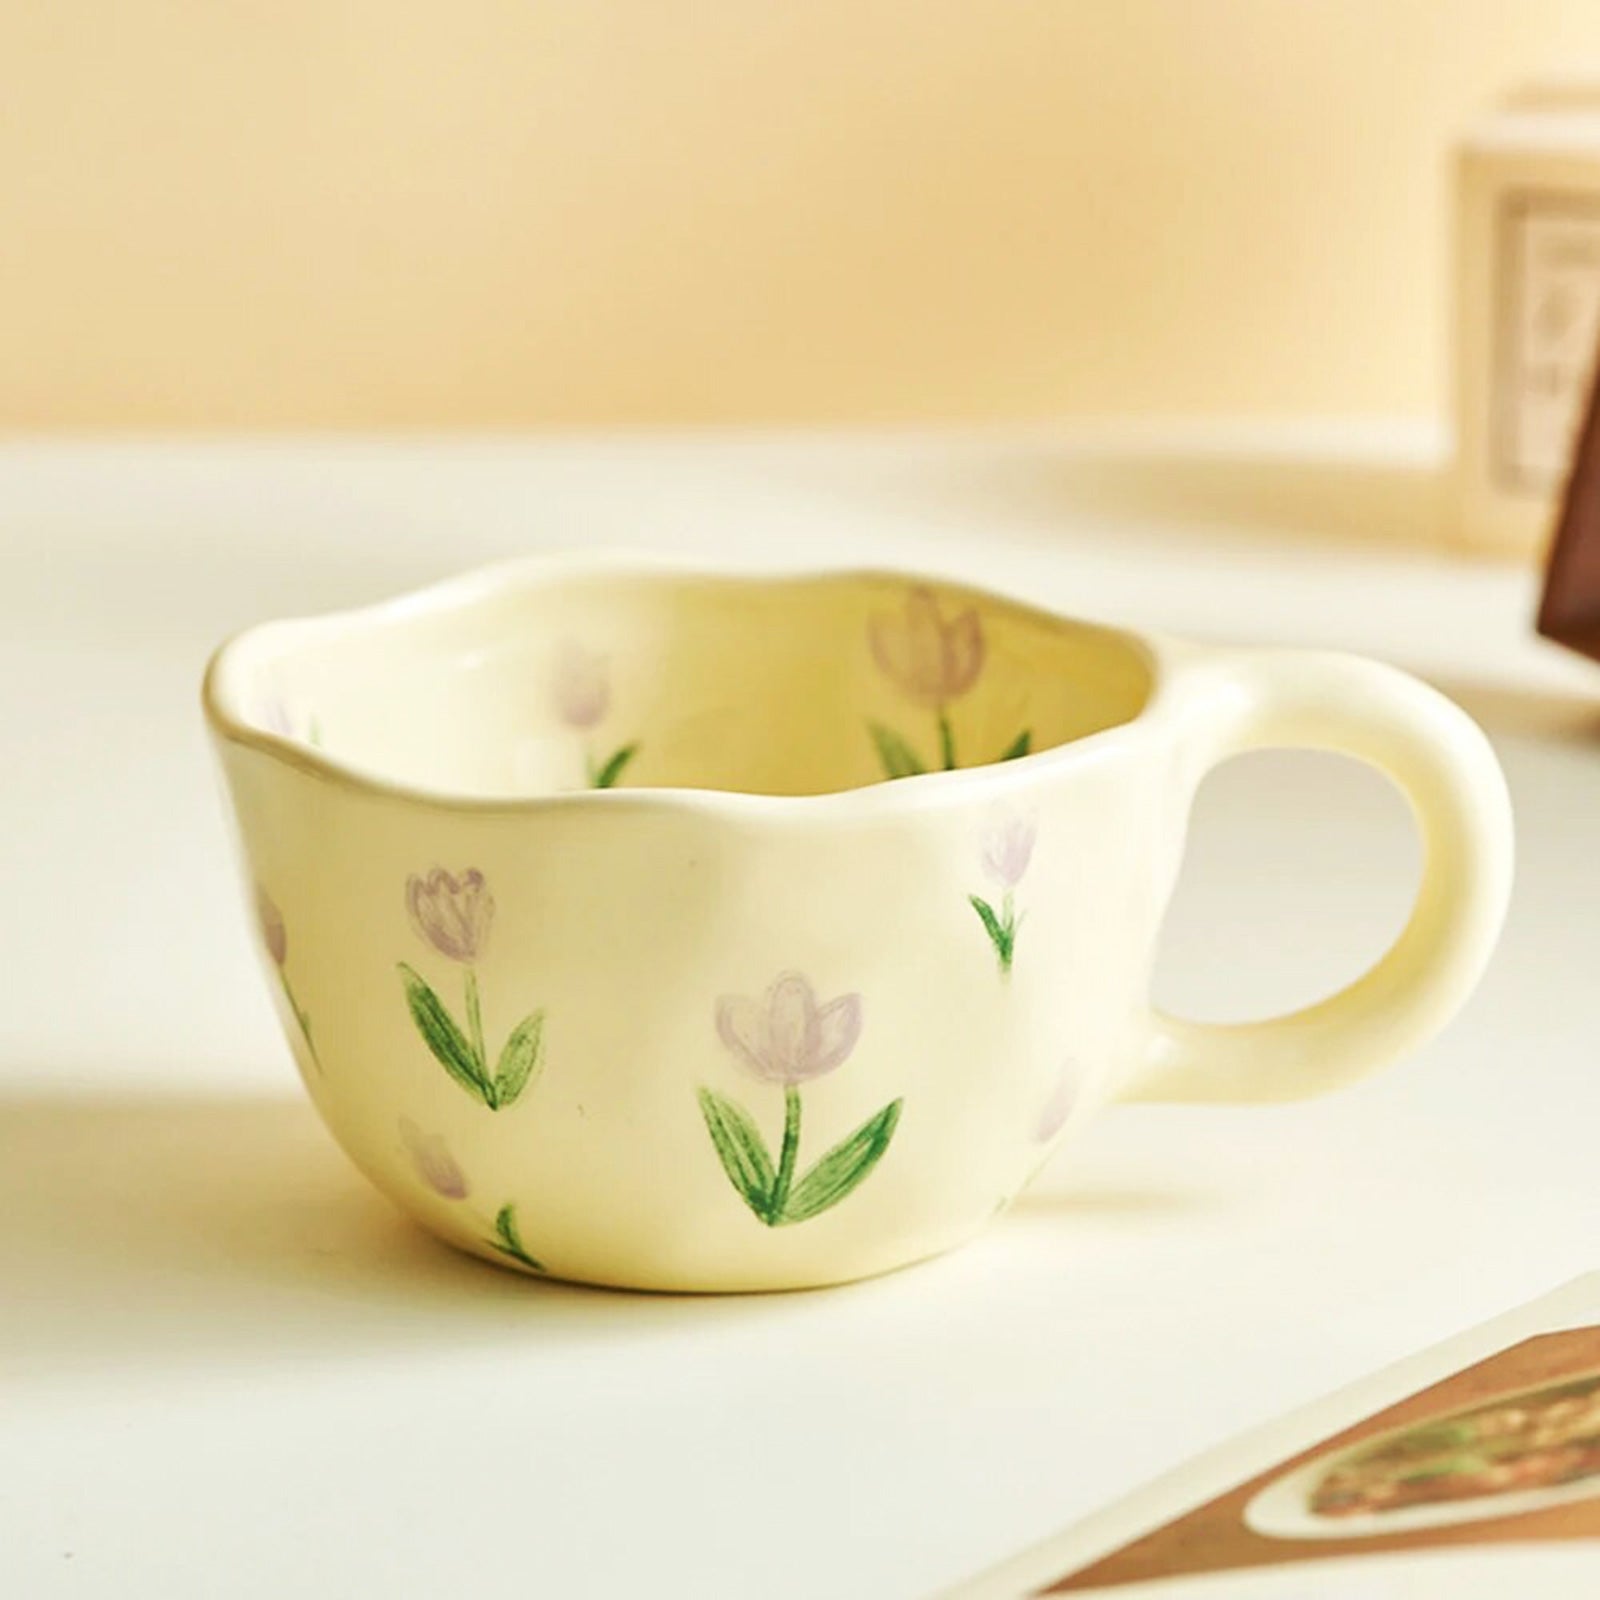 Cozy Retro Mugs with Unique Flower Design